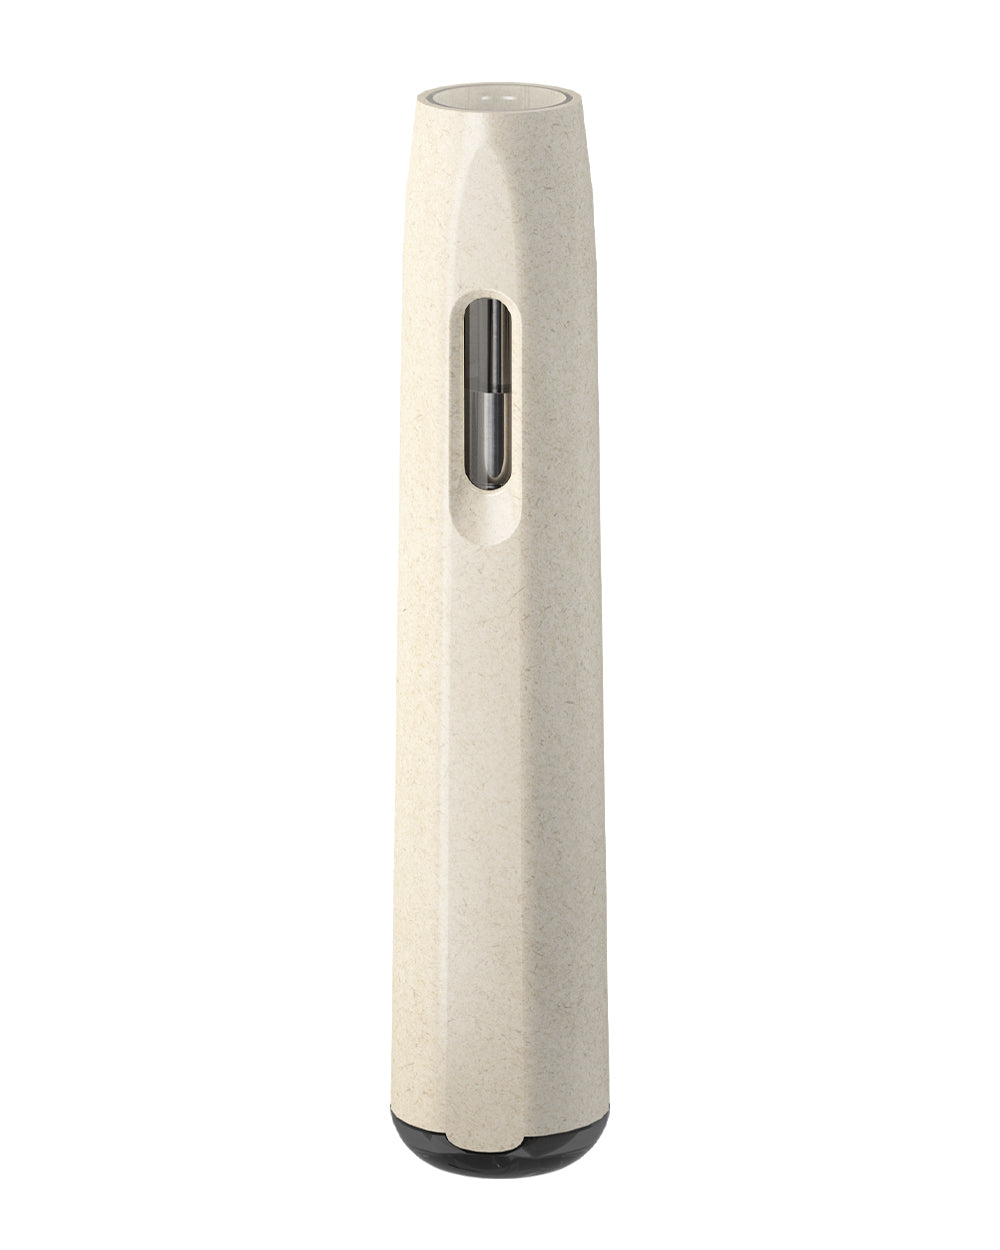 AVD | Stem White Hemp Plastic Blend Rechargeable Disposable Vape Pen w/ Black Vortex Mouthpiece | 1mL - 220 mAh  - 2